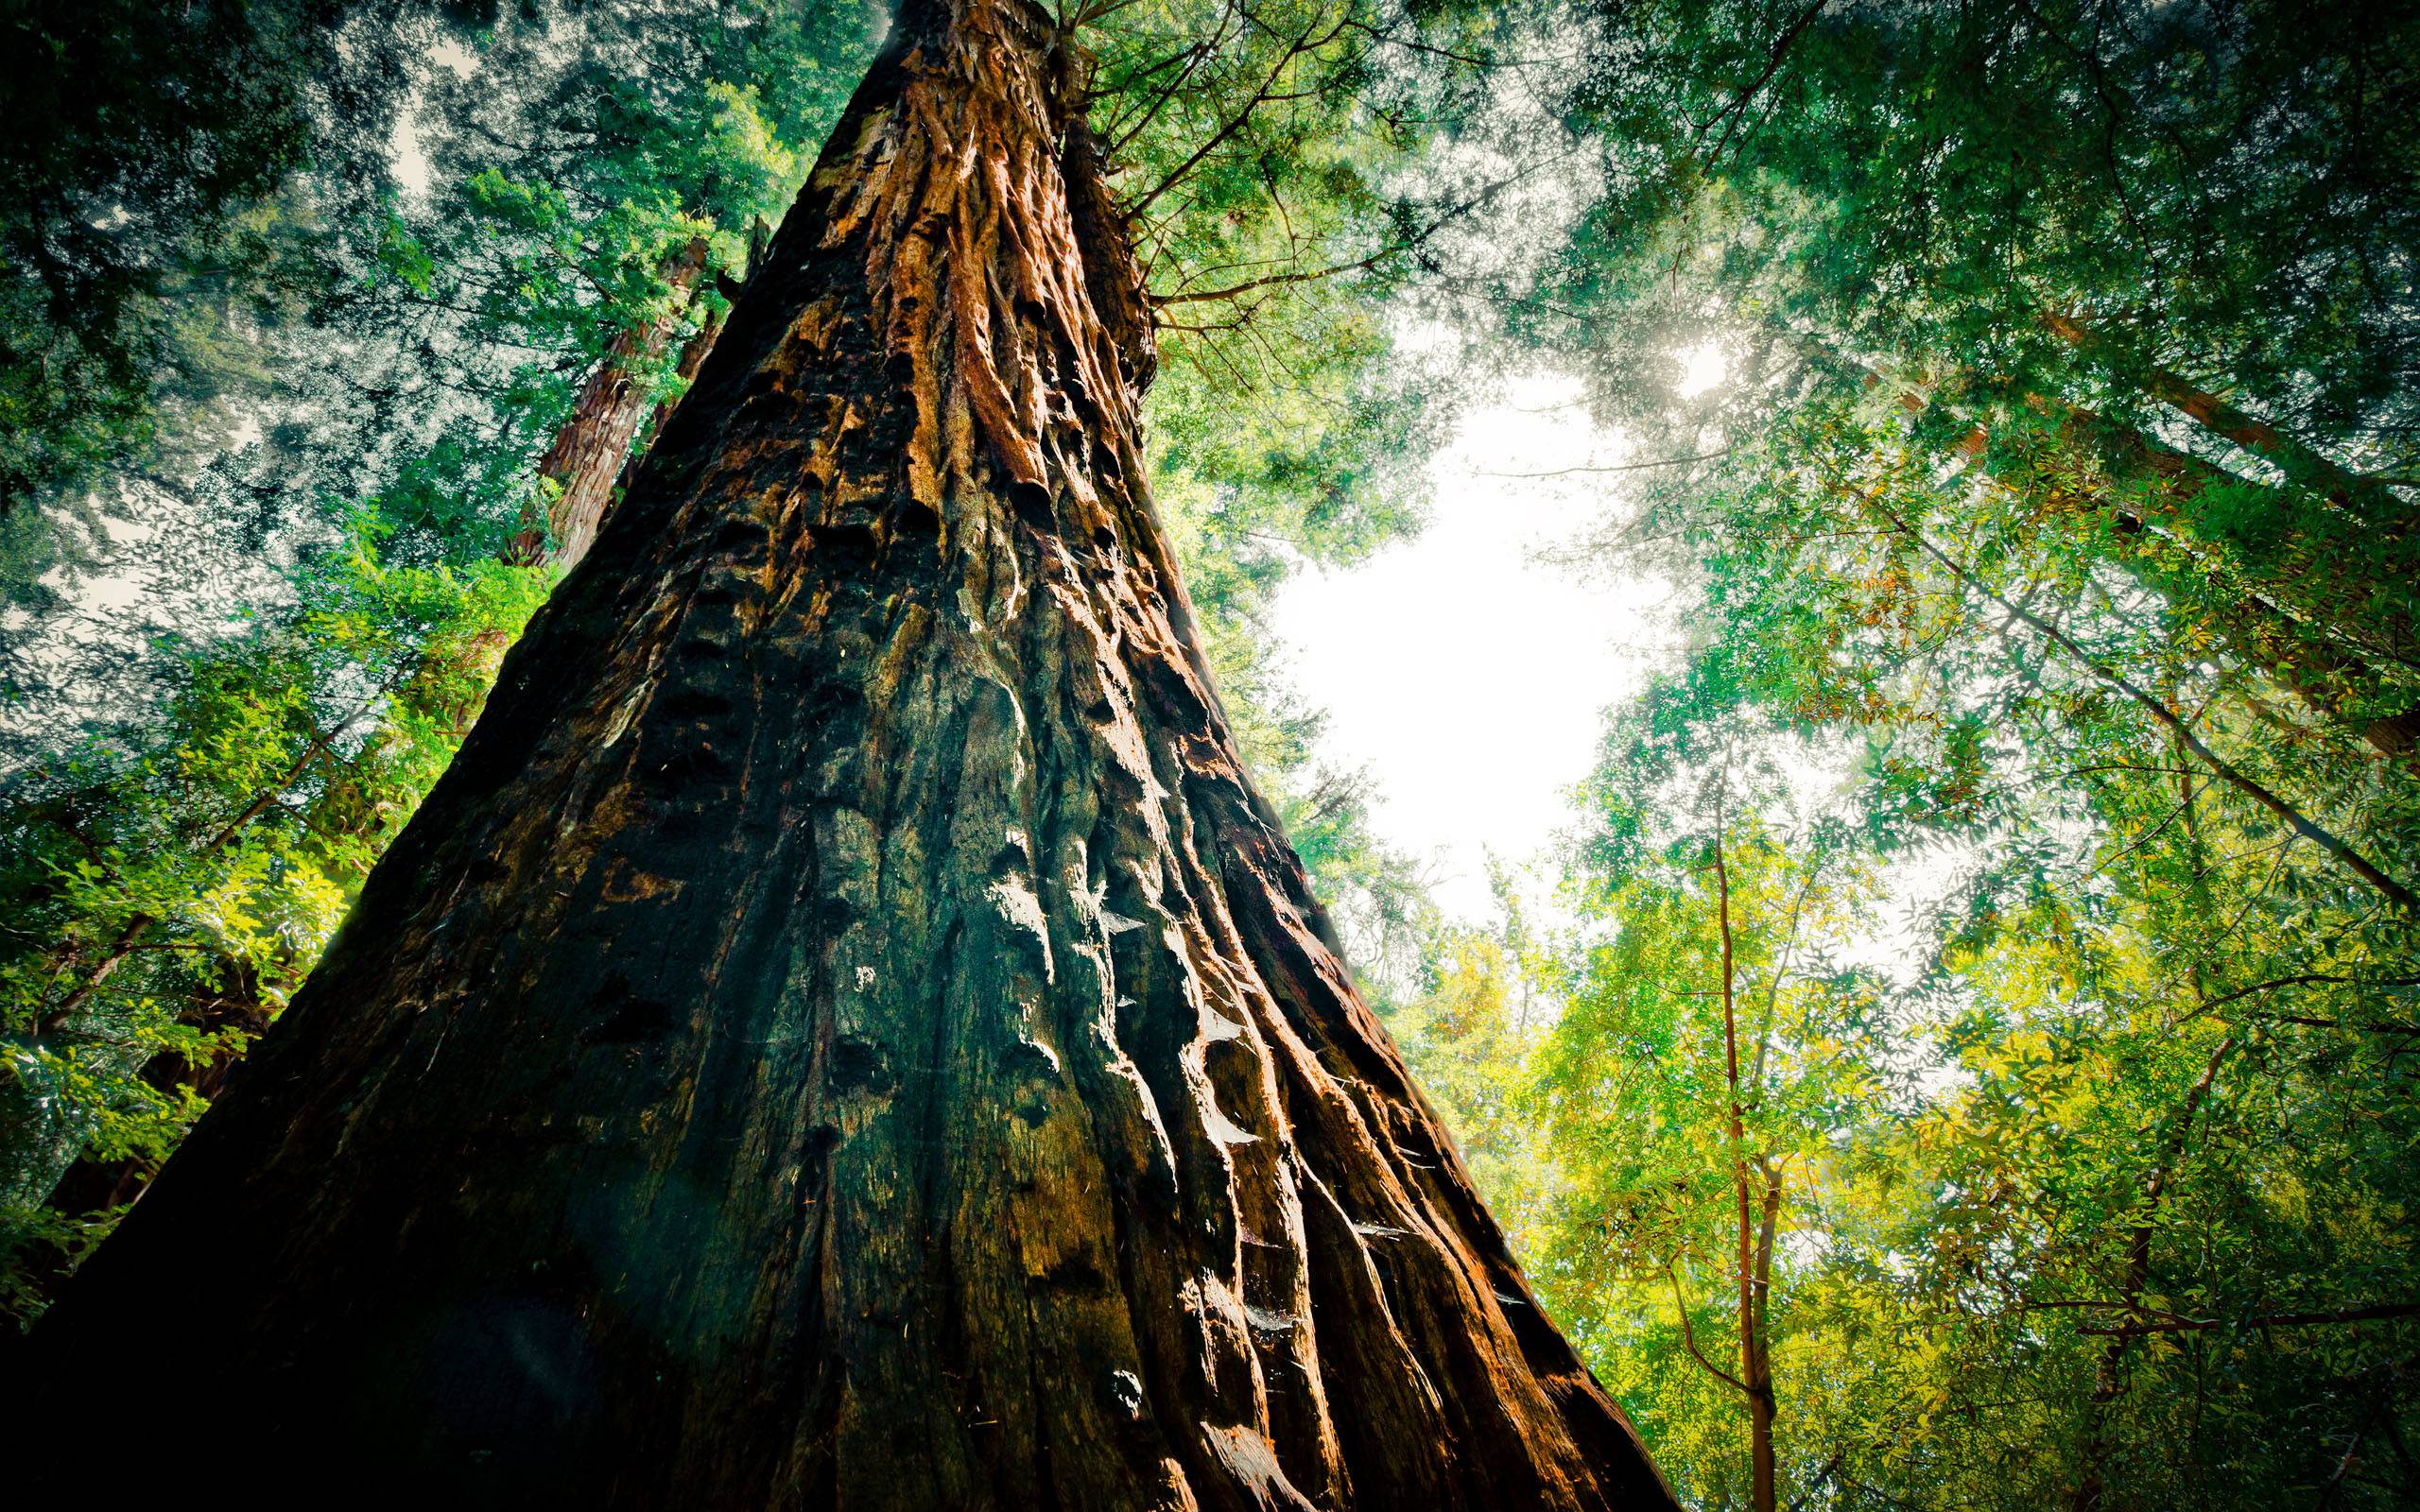 Hình ảnh nền Redwood forest background sẽ đem đến cho bạn một màu sắc đẹp mê hồn, một không gian sống động với những thứ hoang sơ và hoang dã và sự thoải mái khi ngắm nhìn mảnh đất rộng lớn. Hãy đến và đắm mình trong sự quyến rũ của nền Redwood này, bạn chắc chắn sẽ không muốn rời đi đâu cả!